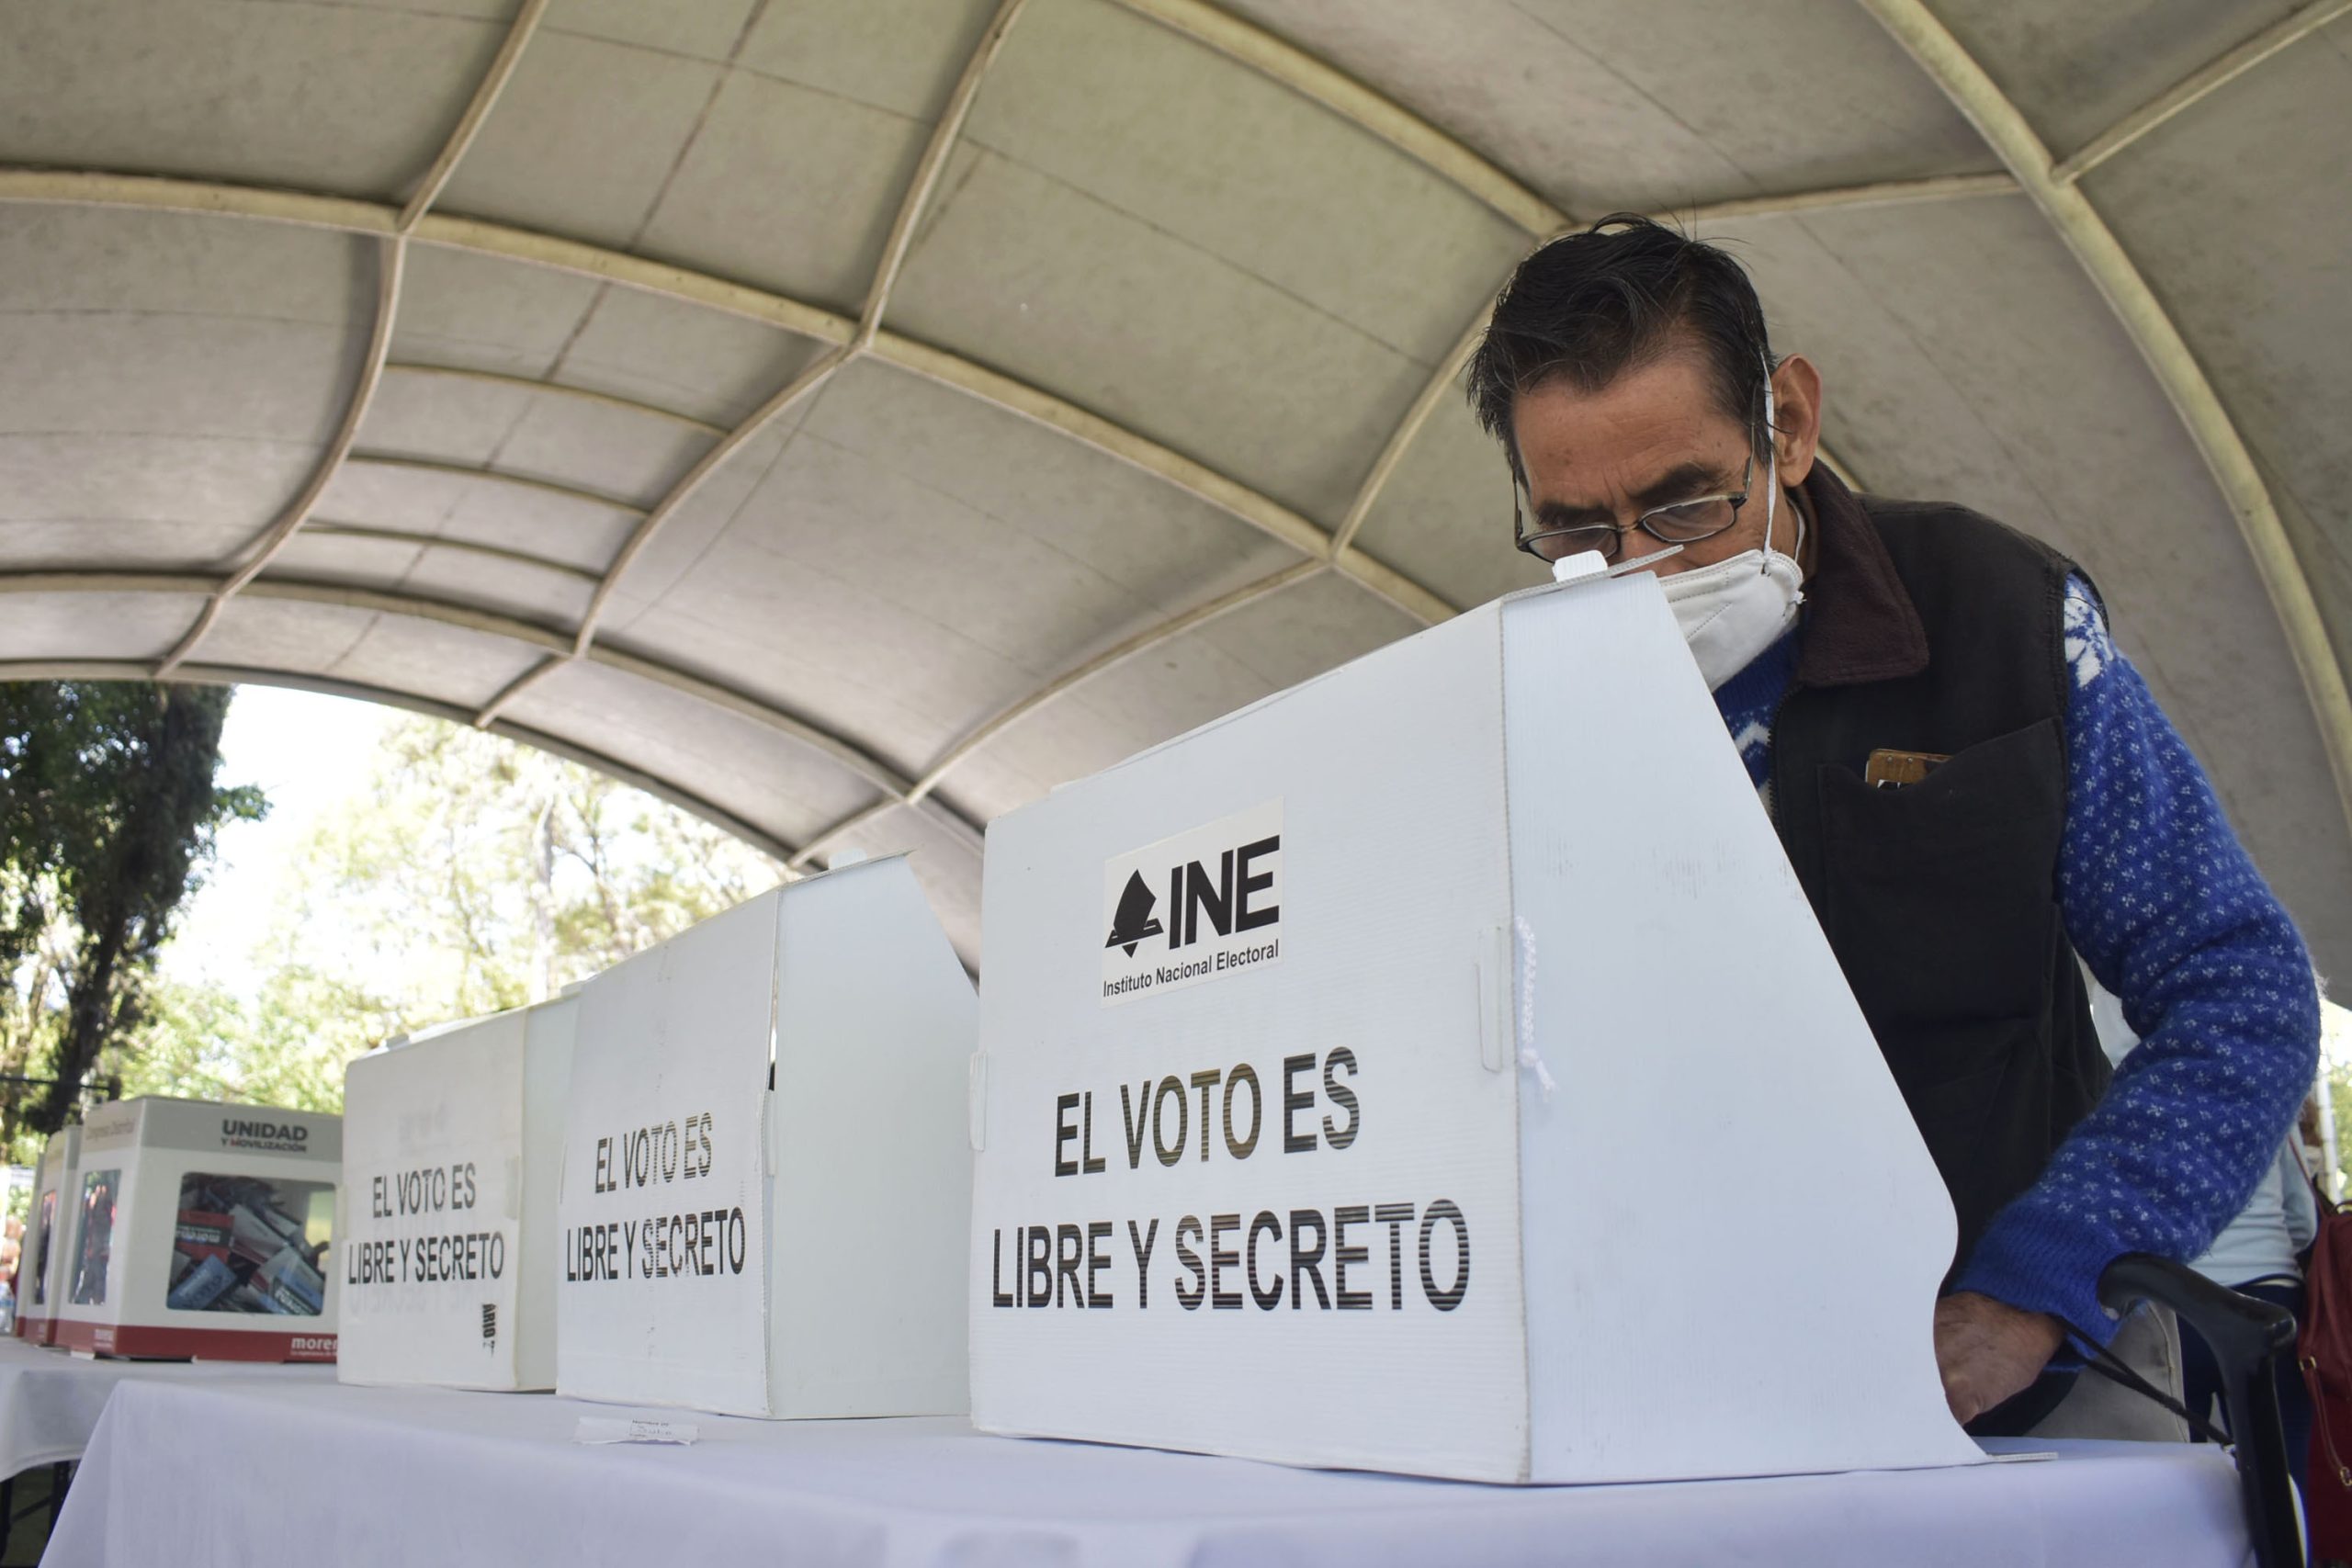 Reforma electoral: «si limita derechos humanos, se quita», dice presidente